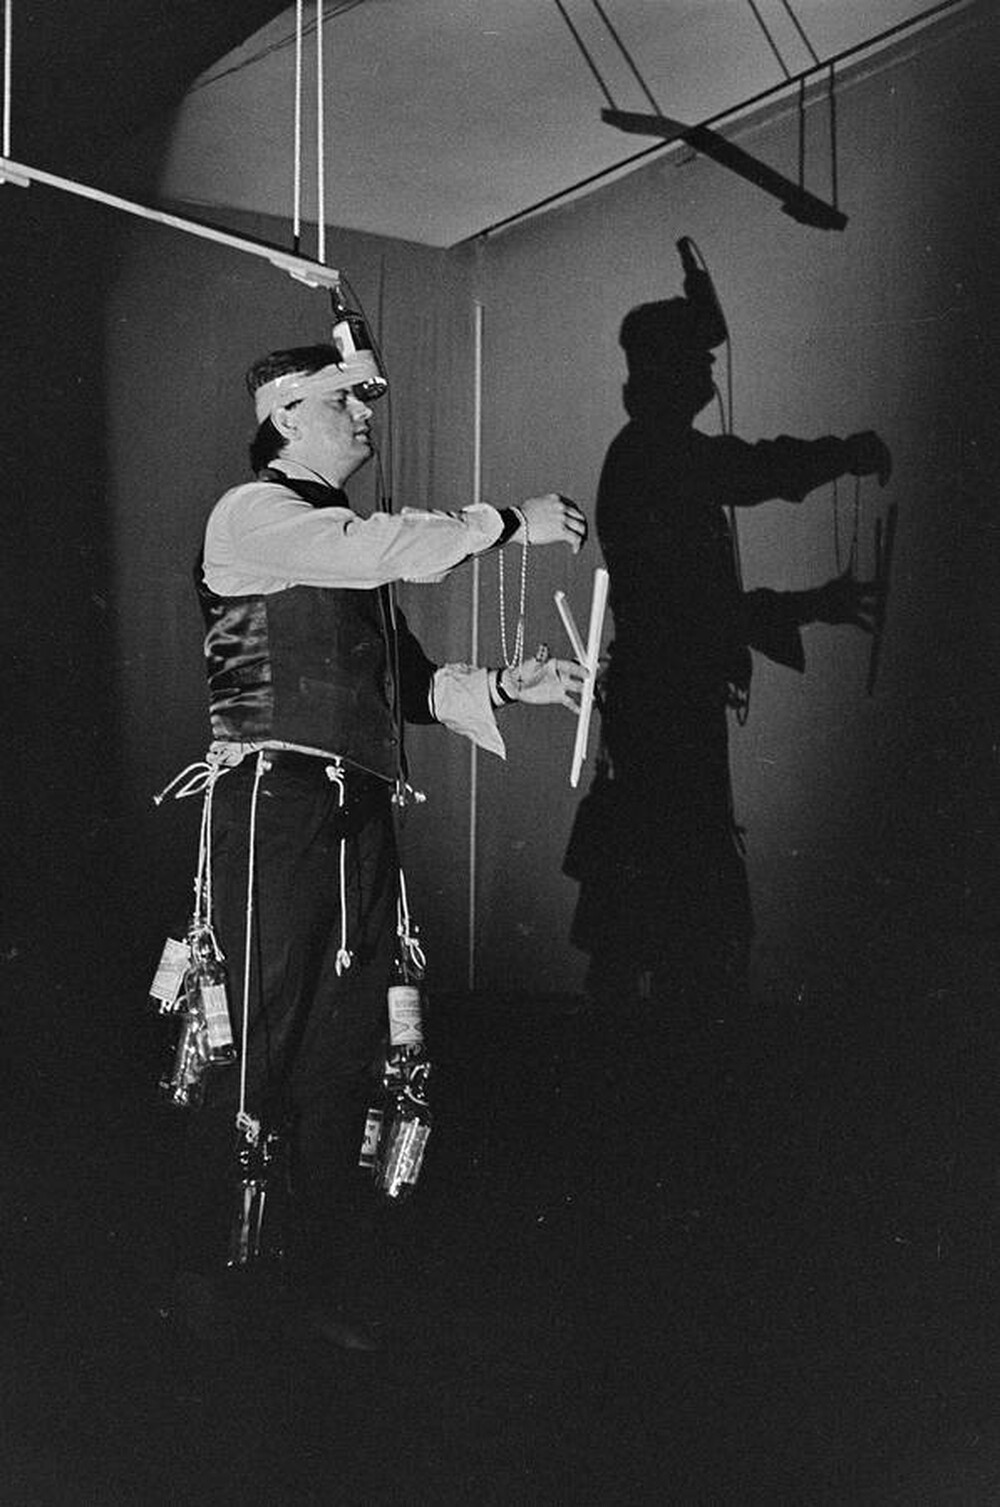 Władysław Kaźmierczak, performance, Stodoła Gallery, Warsaw, 1986